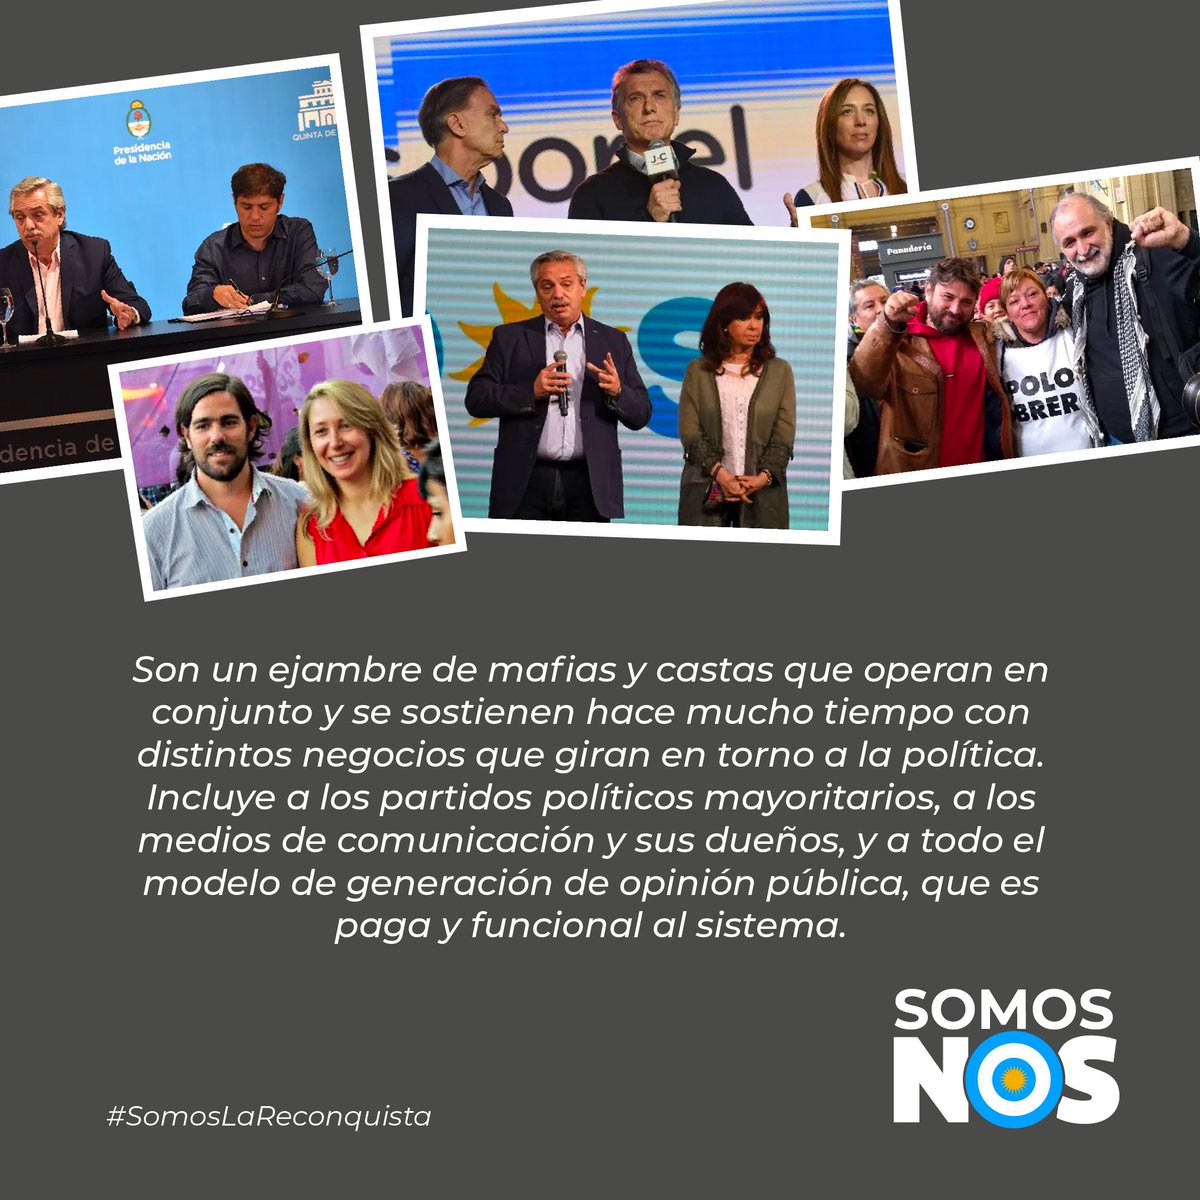 El sistema político que hace 40 años viene destruyendo a la Argentina hoy pretende convencernos de que va a solucionar los problemas de la Argentina, pero ellos son el problema. #SomosNOS #SomosLaReconquista